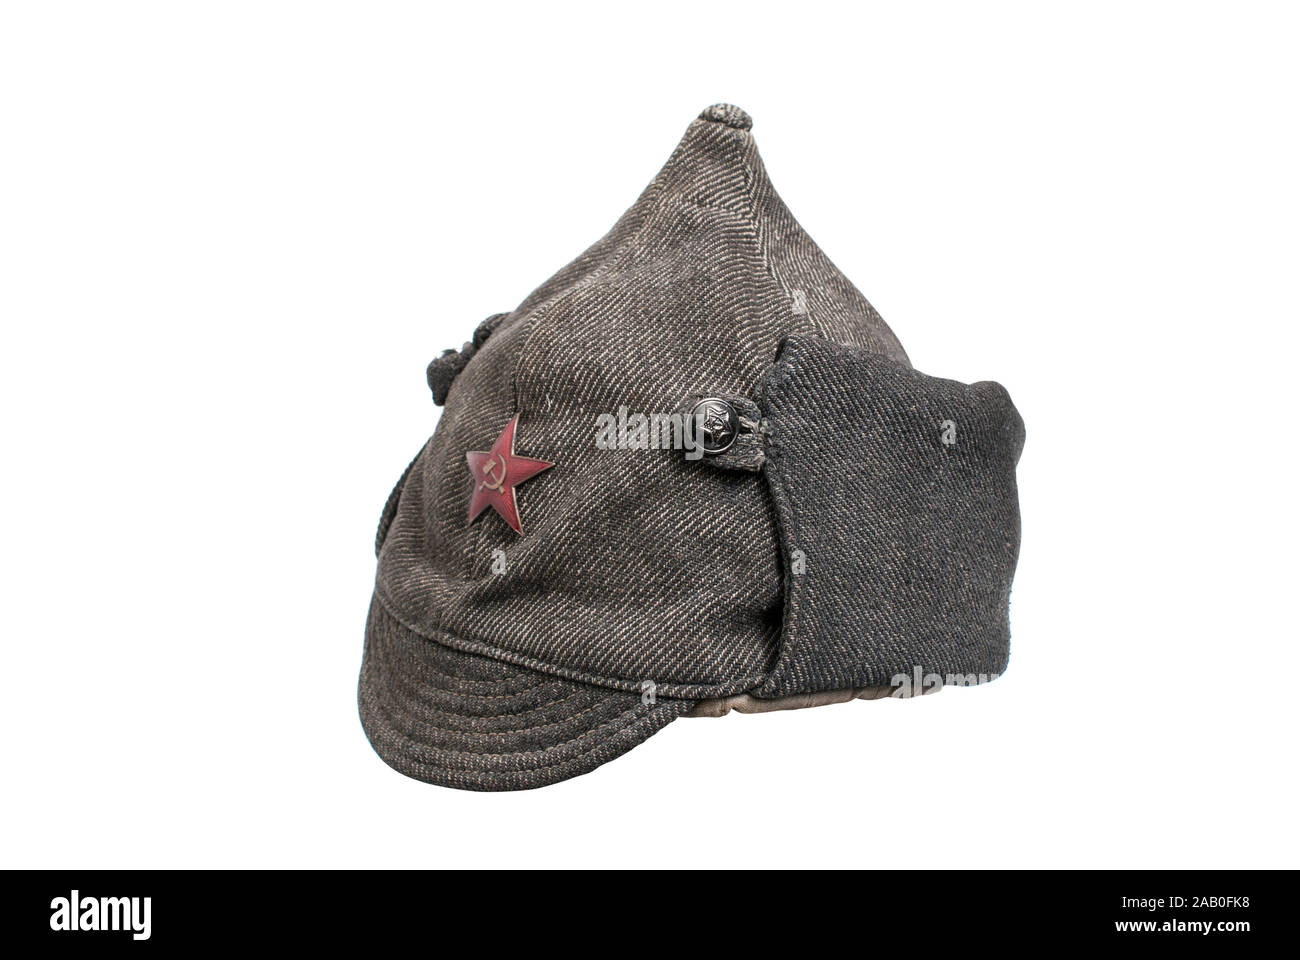 Urss (Russie) l'histoire. Les militaires de l'URSS Budenny (cap) - a souligné auparavant casque porté par les hommes de l'Armée Rouge. 1933. La Russie. Banque D'Images